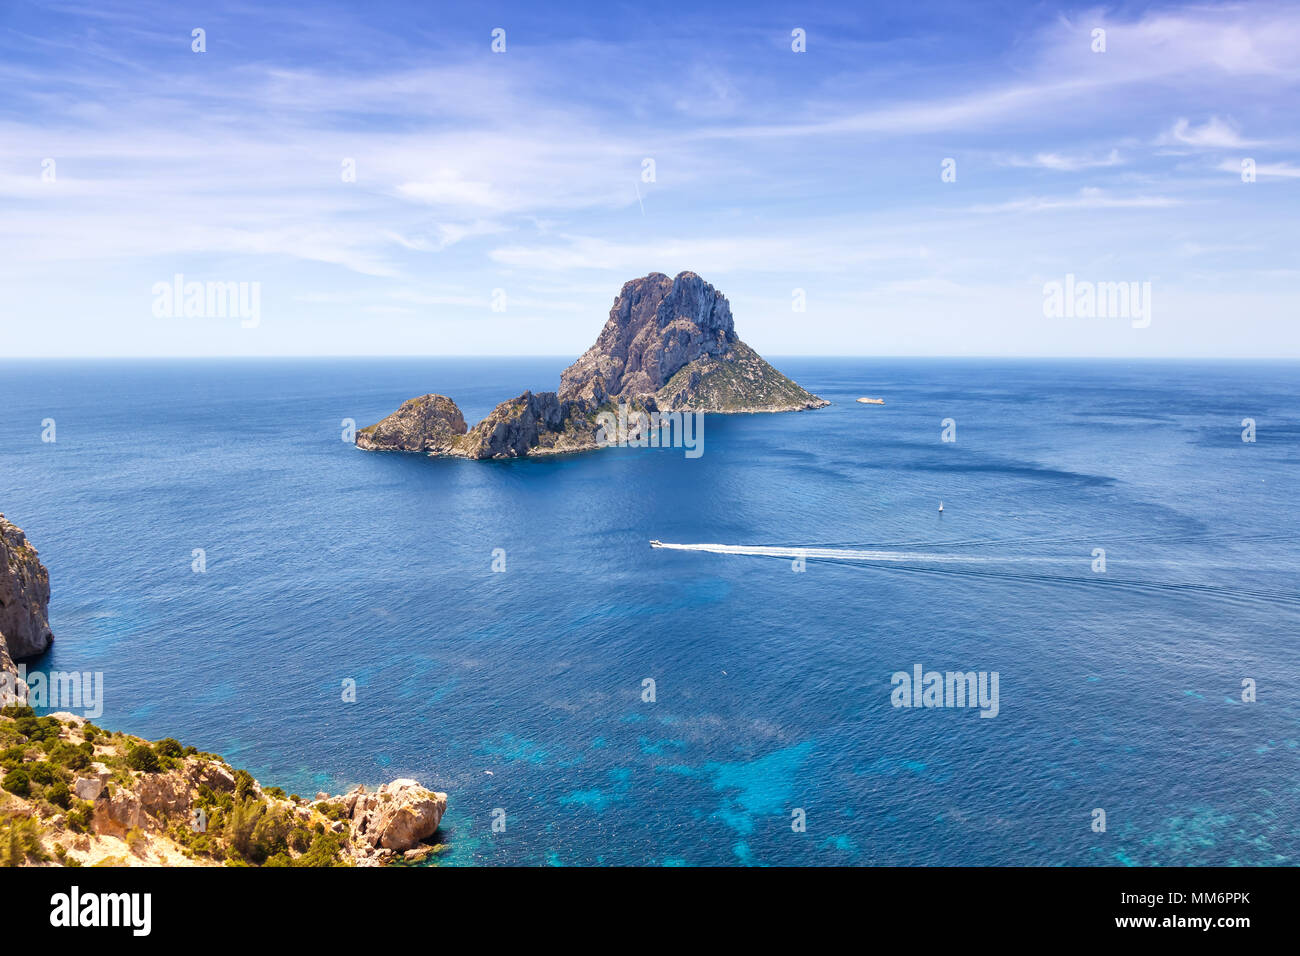 Es Vedra Ibiza rock island voyage Espagne Mer Méditerranée voile locations de voyager Banque D'Images